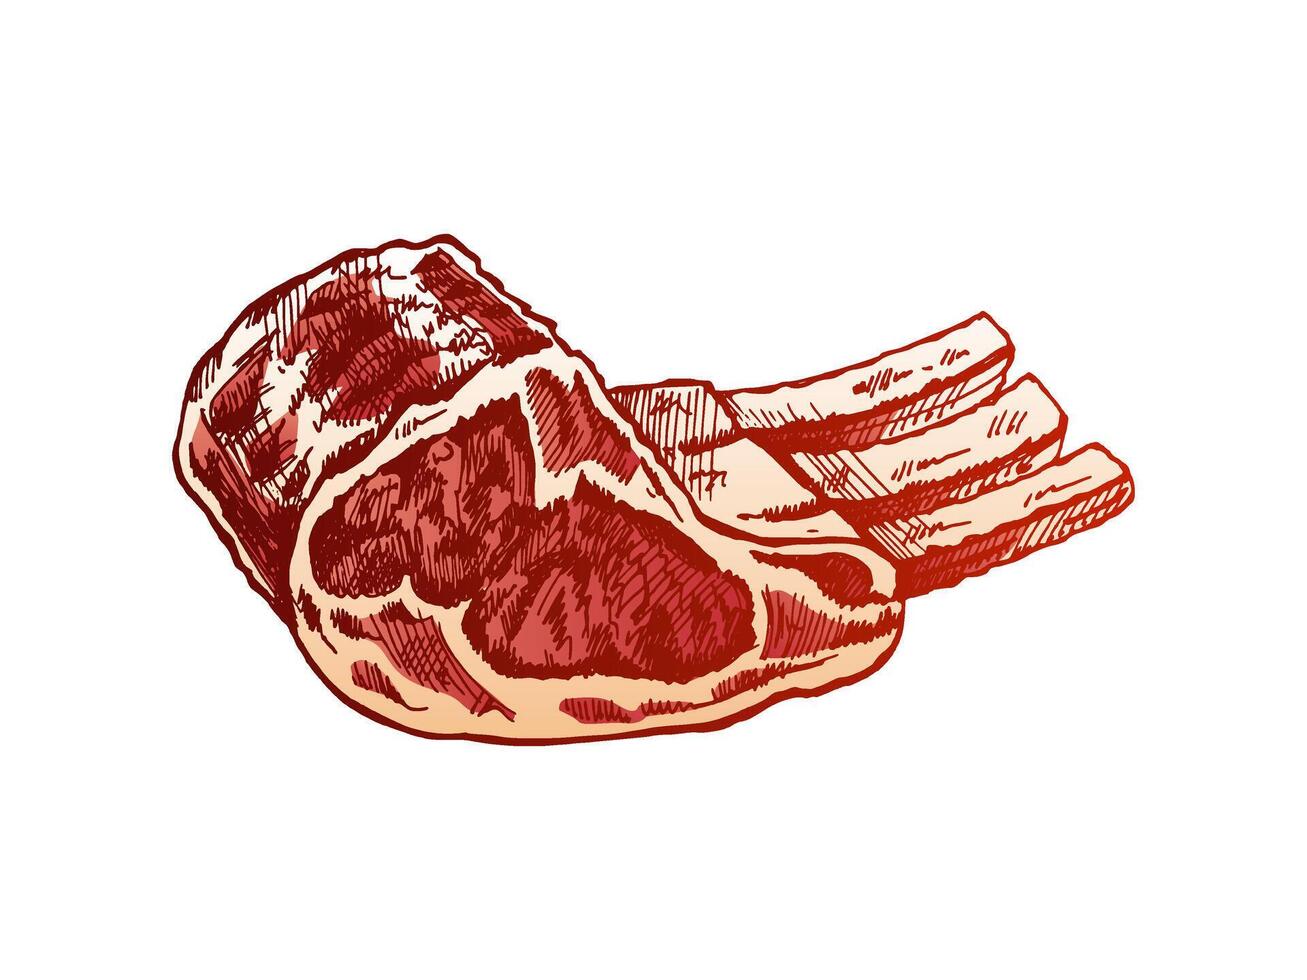 orgánico alimento. dibujado a mano de colores vector bosquejo de cerdo, carne, Cordero costillas, pedazo de carne. Clásico ilustración. decoraciones para el menú de cafés grabado imagen.